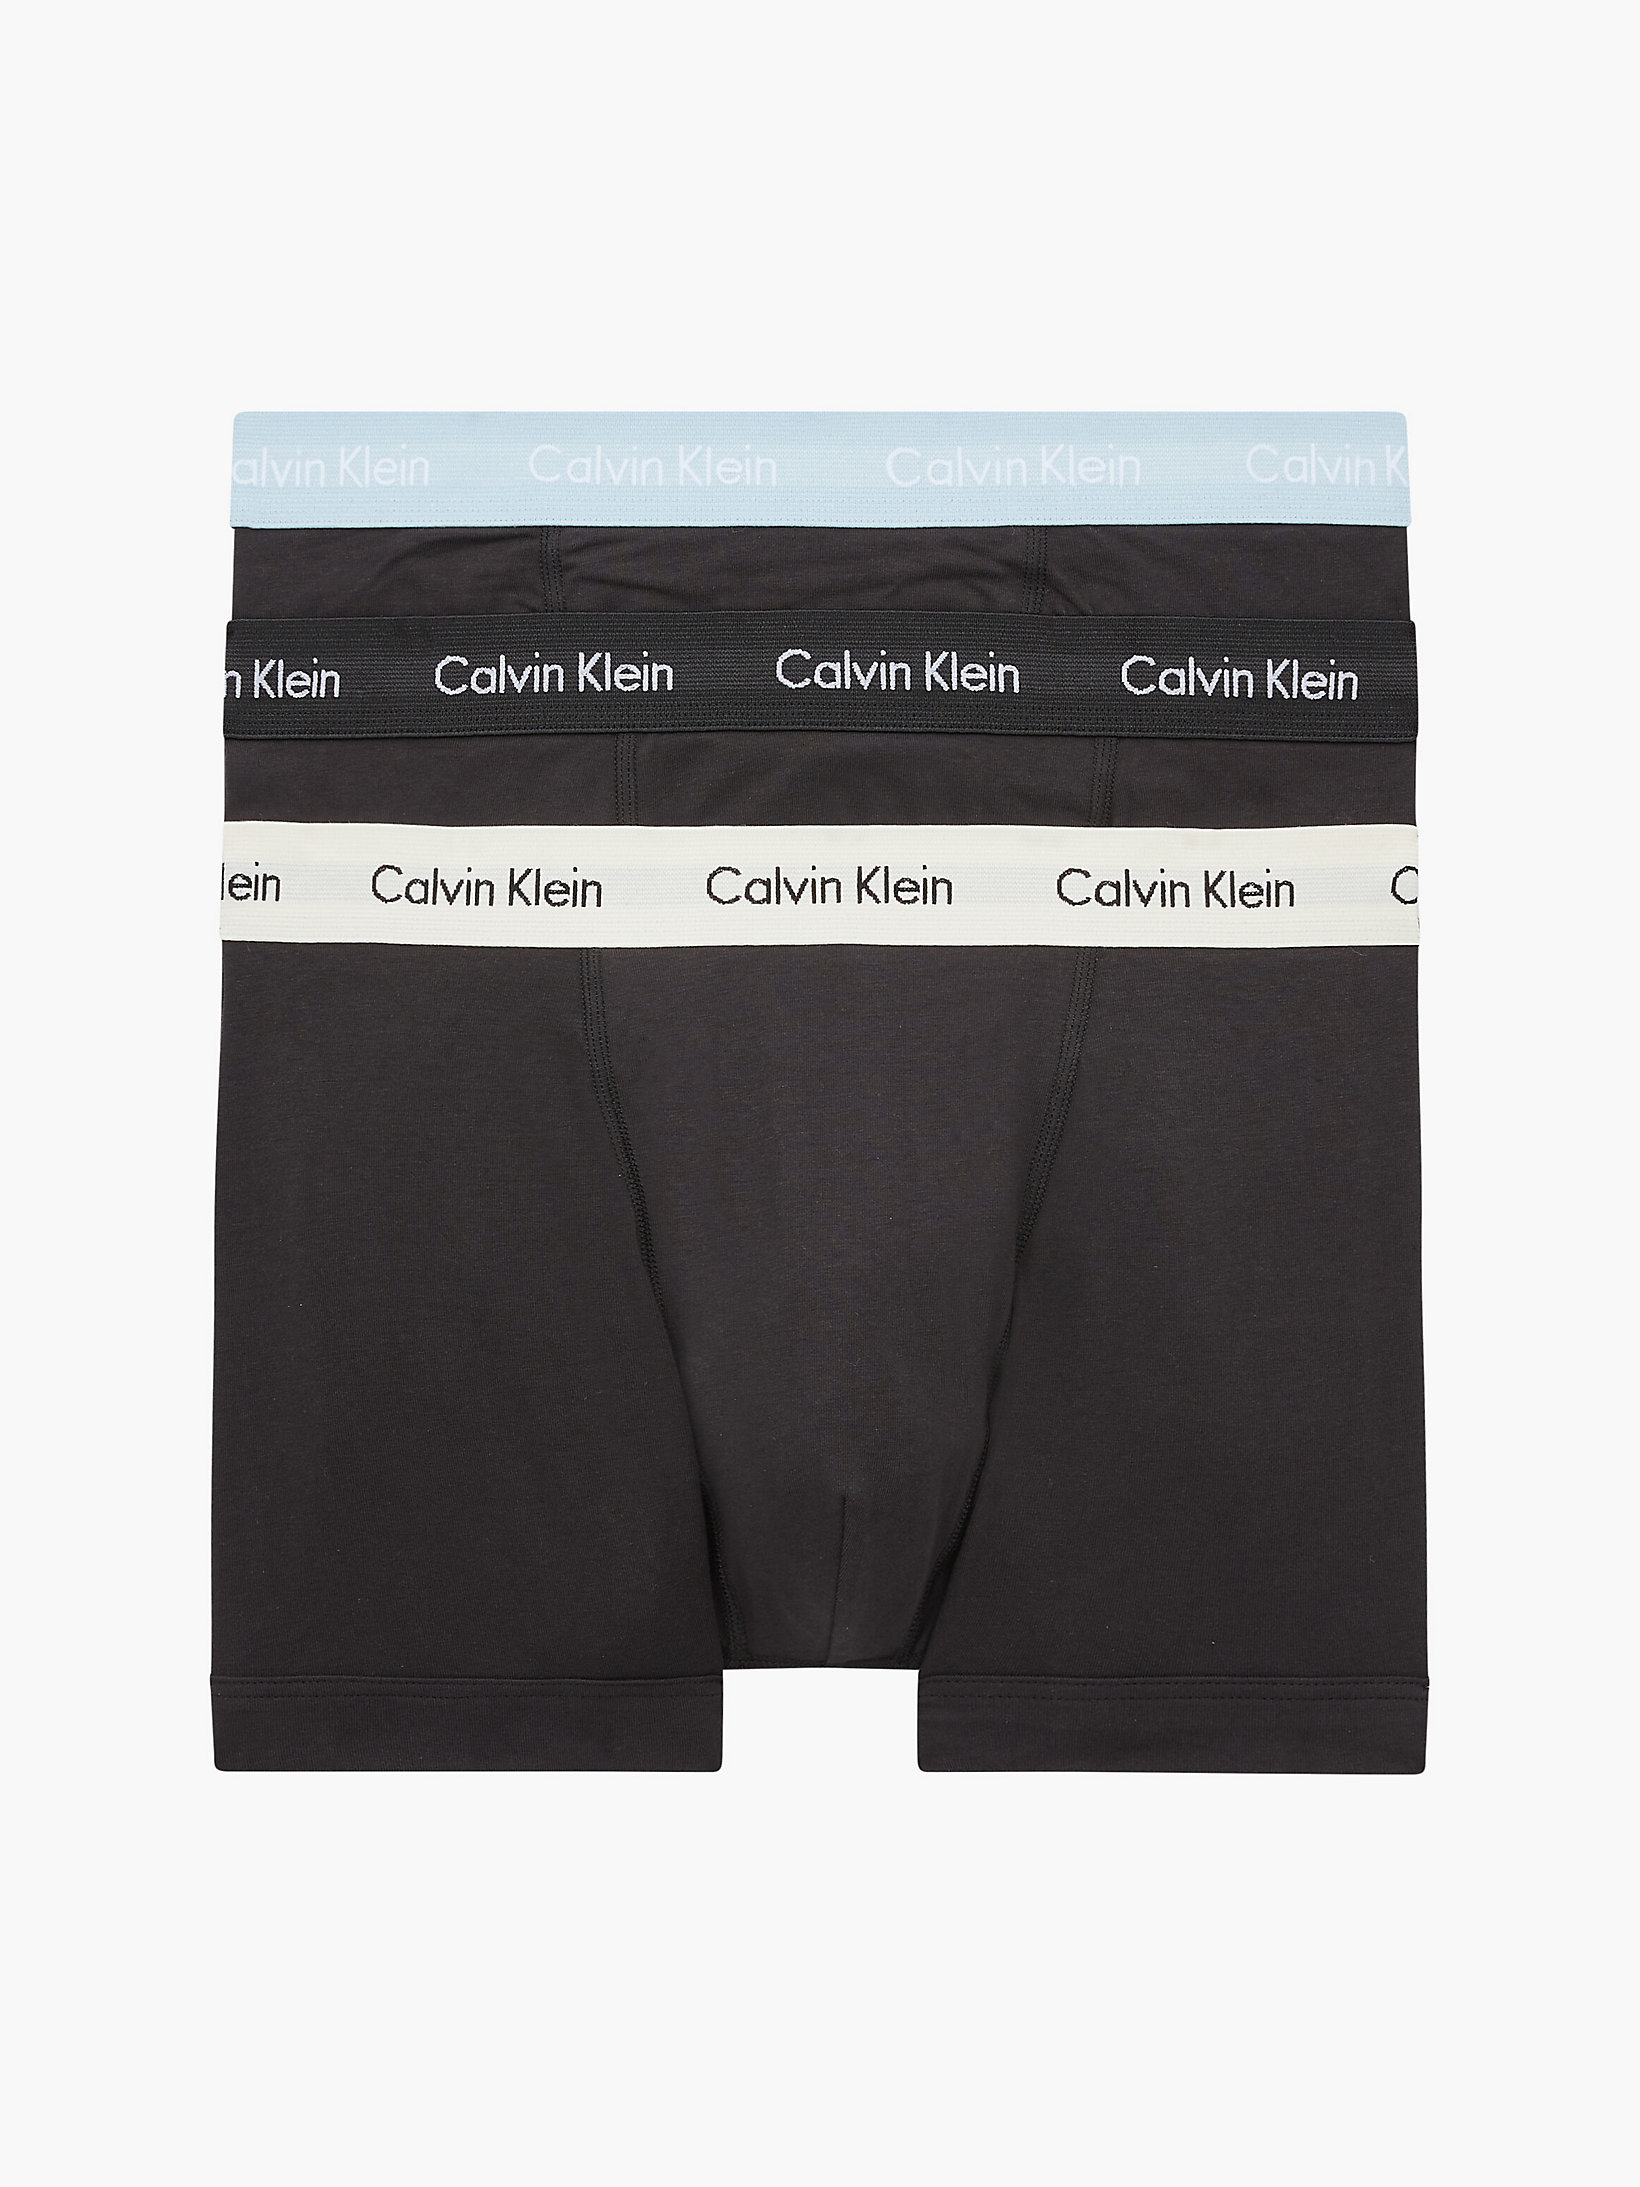 Uomo Abbigliamento da Intimo da Boxer BoxerCalvin Klein in Cotone da Uomo colore Nero 